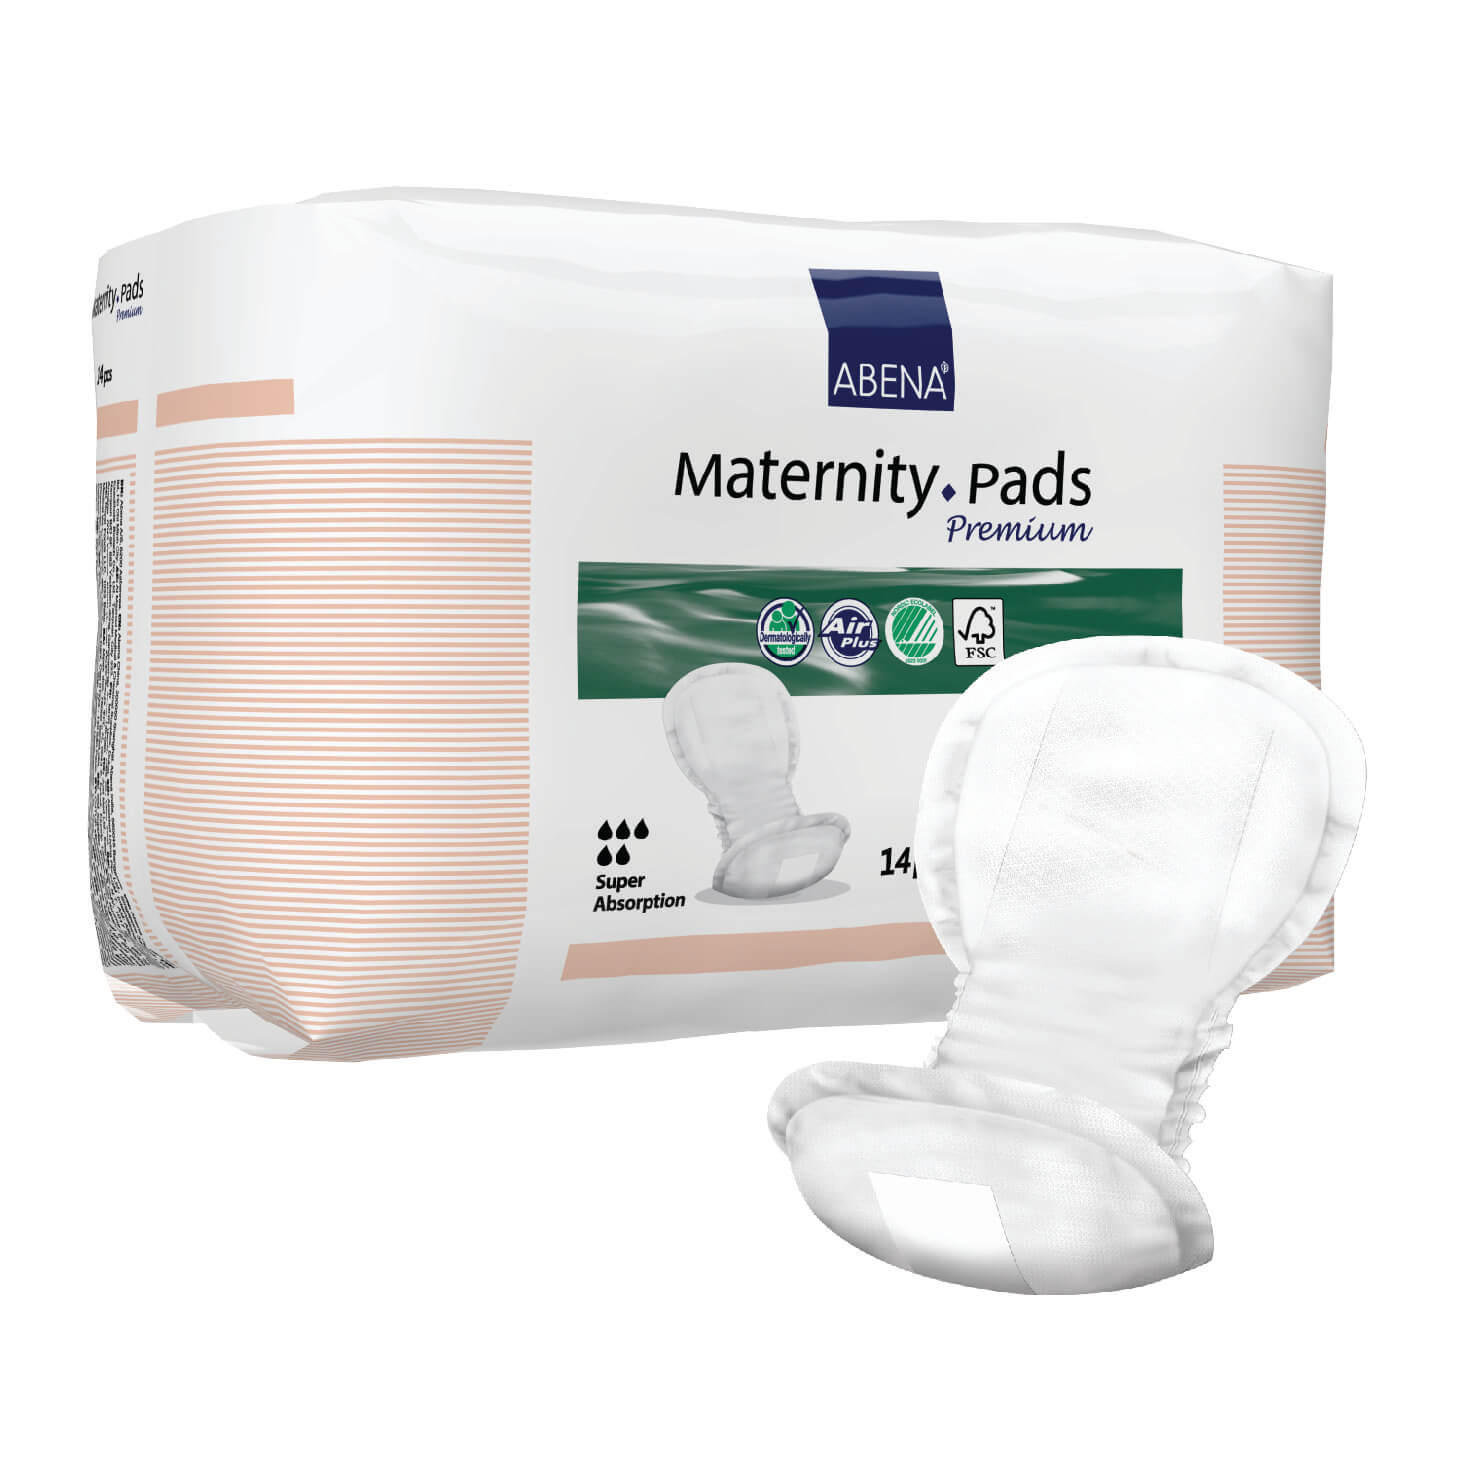 Maternity Pads Premium : Des protections et des changements post-nataux  confortables et efficaces pour les nouvelles mamans